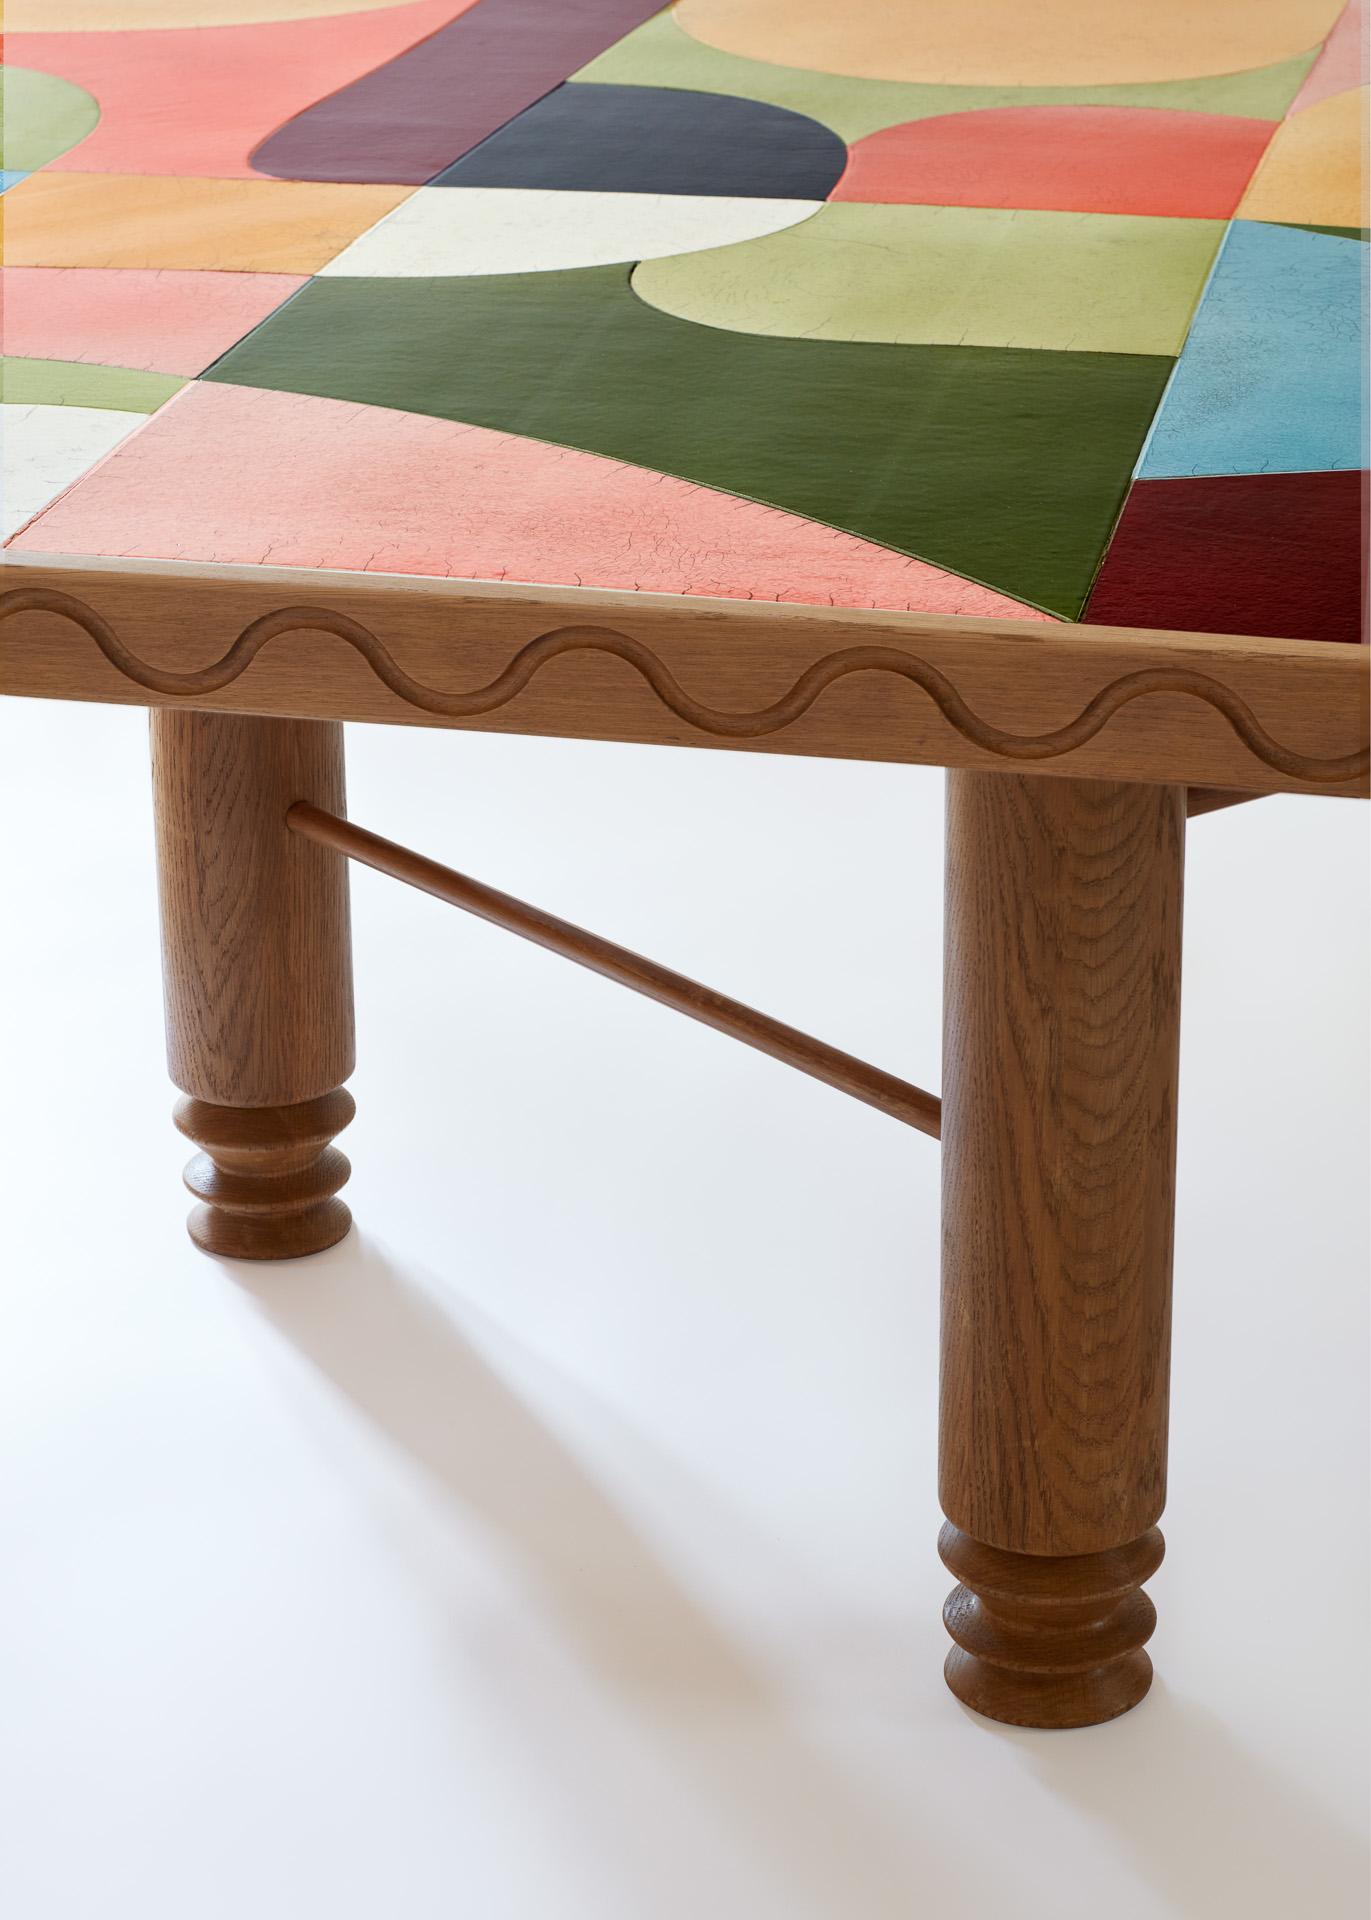 Regenbogen Holztisch mit einer bunten Puzzle-Platte mit Avant-Garde-Mustern, entworfen von Laura GONZALEZ.
Gedrechselte Beine und geschnitzte Zarge aus sandgestrahlter Goldeiche, kostbare Tischplatte aus Raku-Einlegearbeit, japanische Keramik.
    